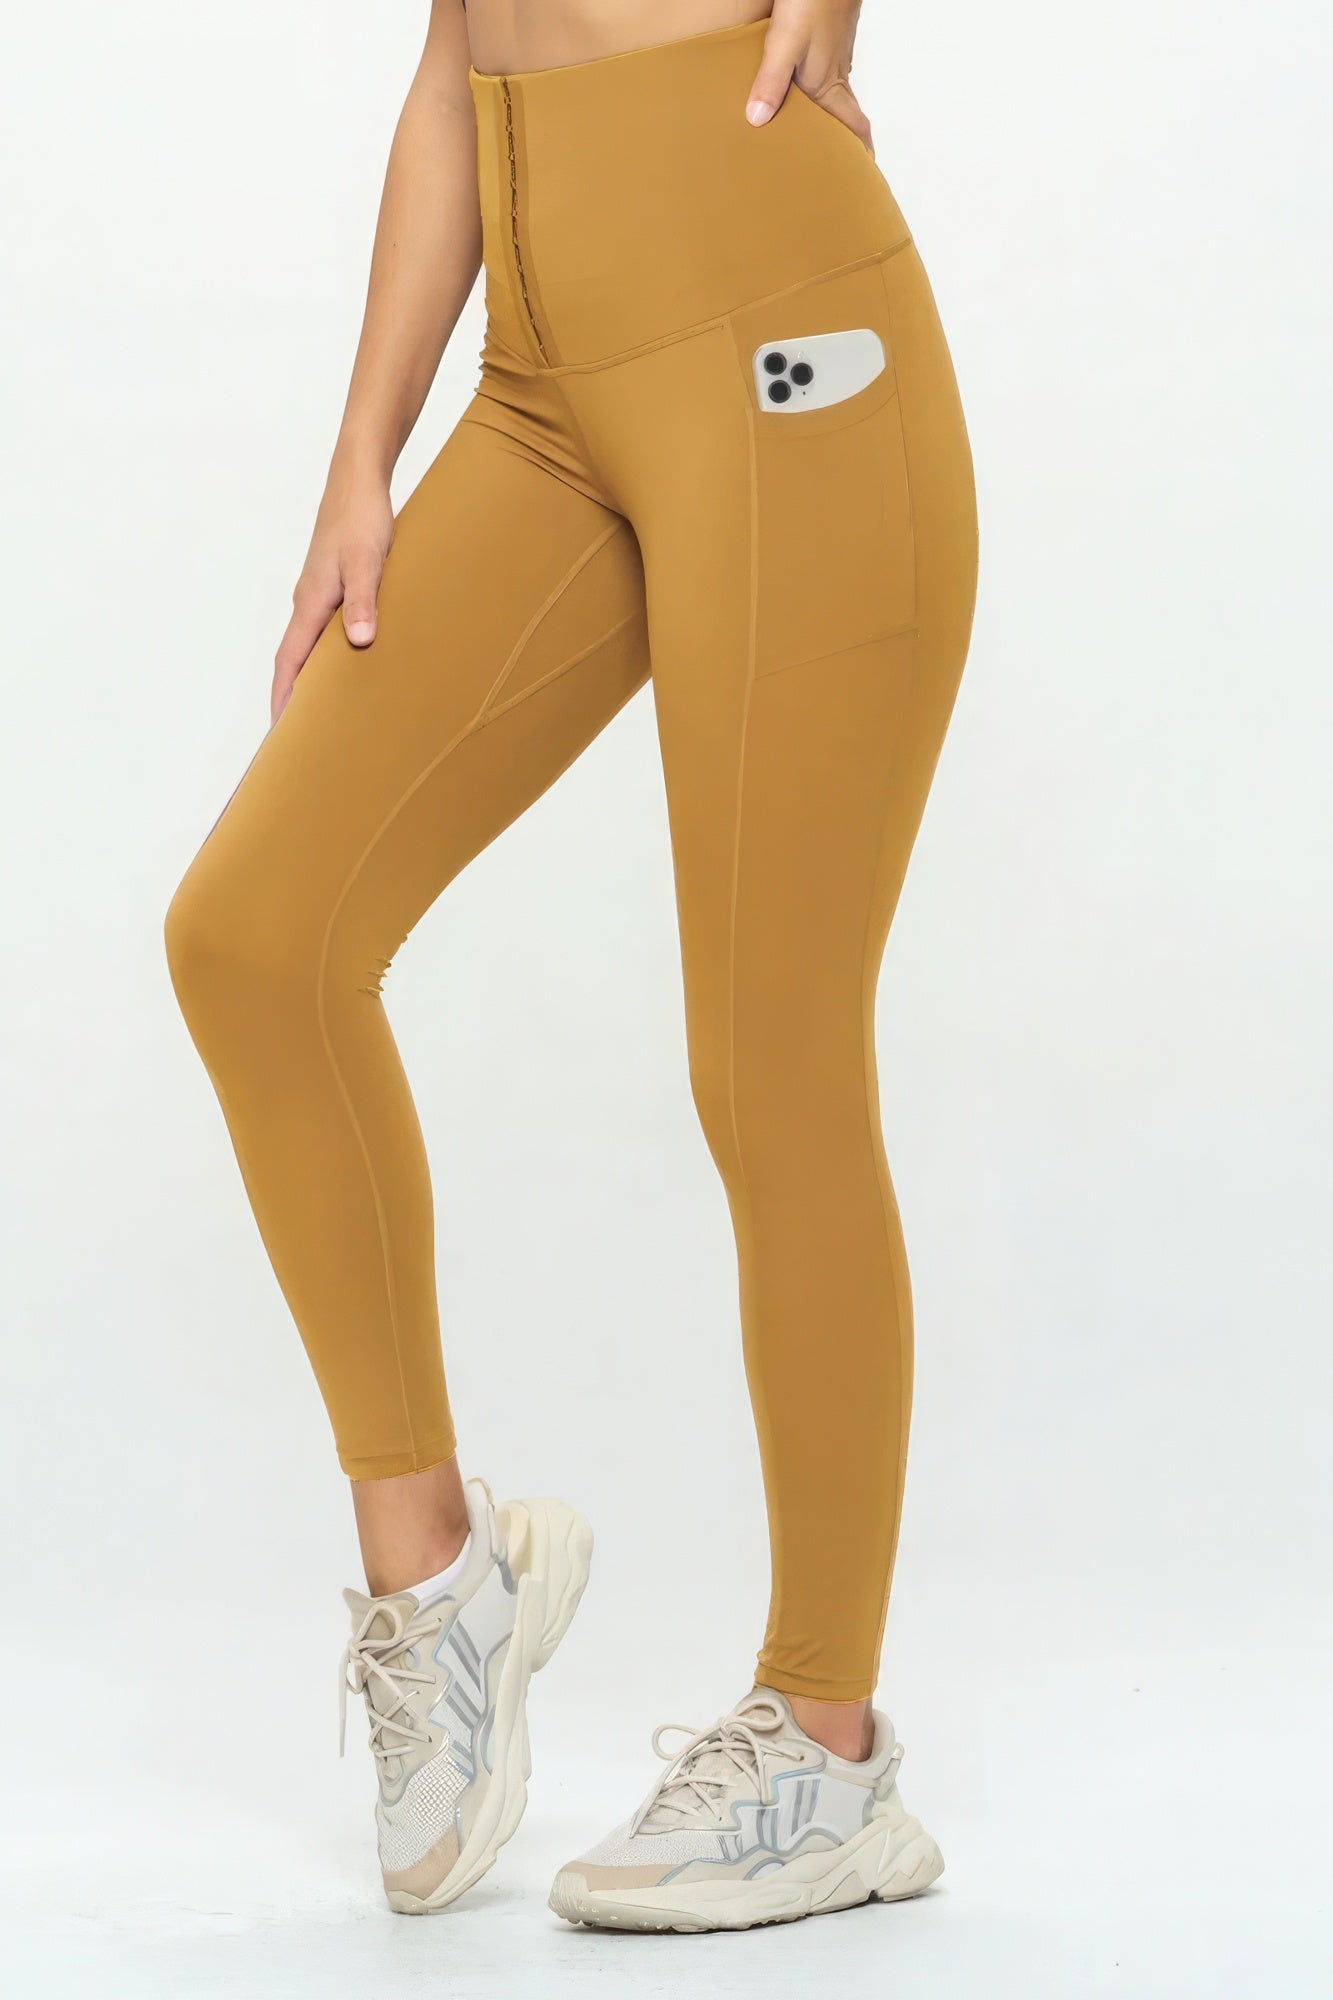 Body Shaper Fashion Yoga Legging - Mustard